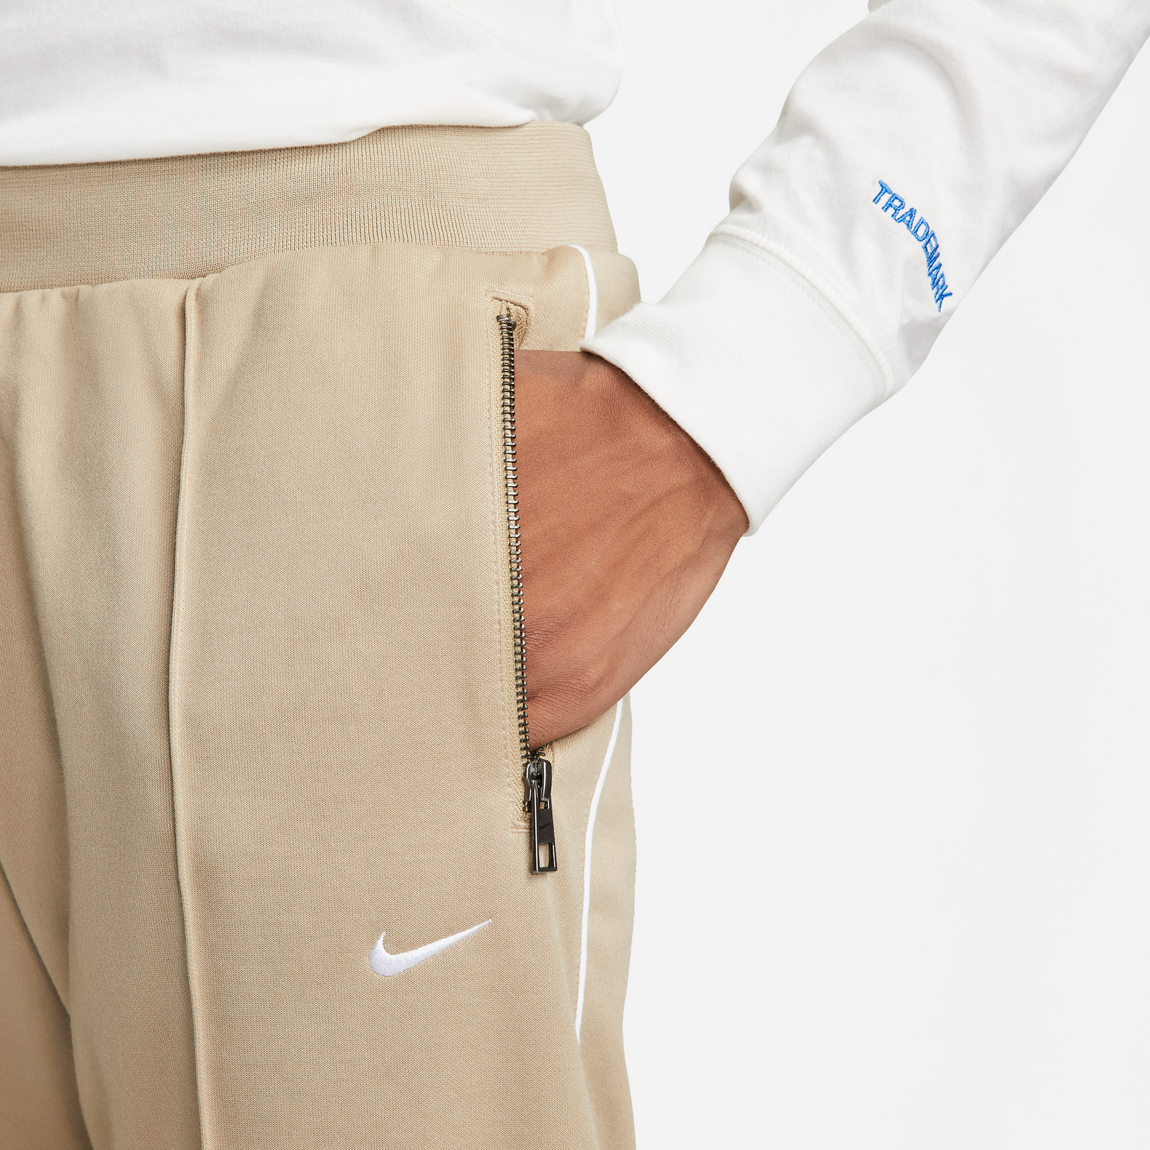 Nike Sportswear Pants (Khaki/White) - Nike Sportswear Pants (Khaki/White) - 